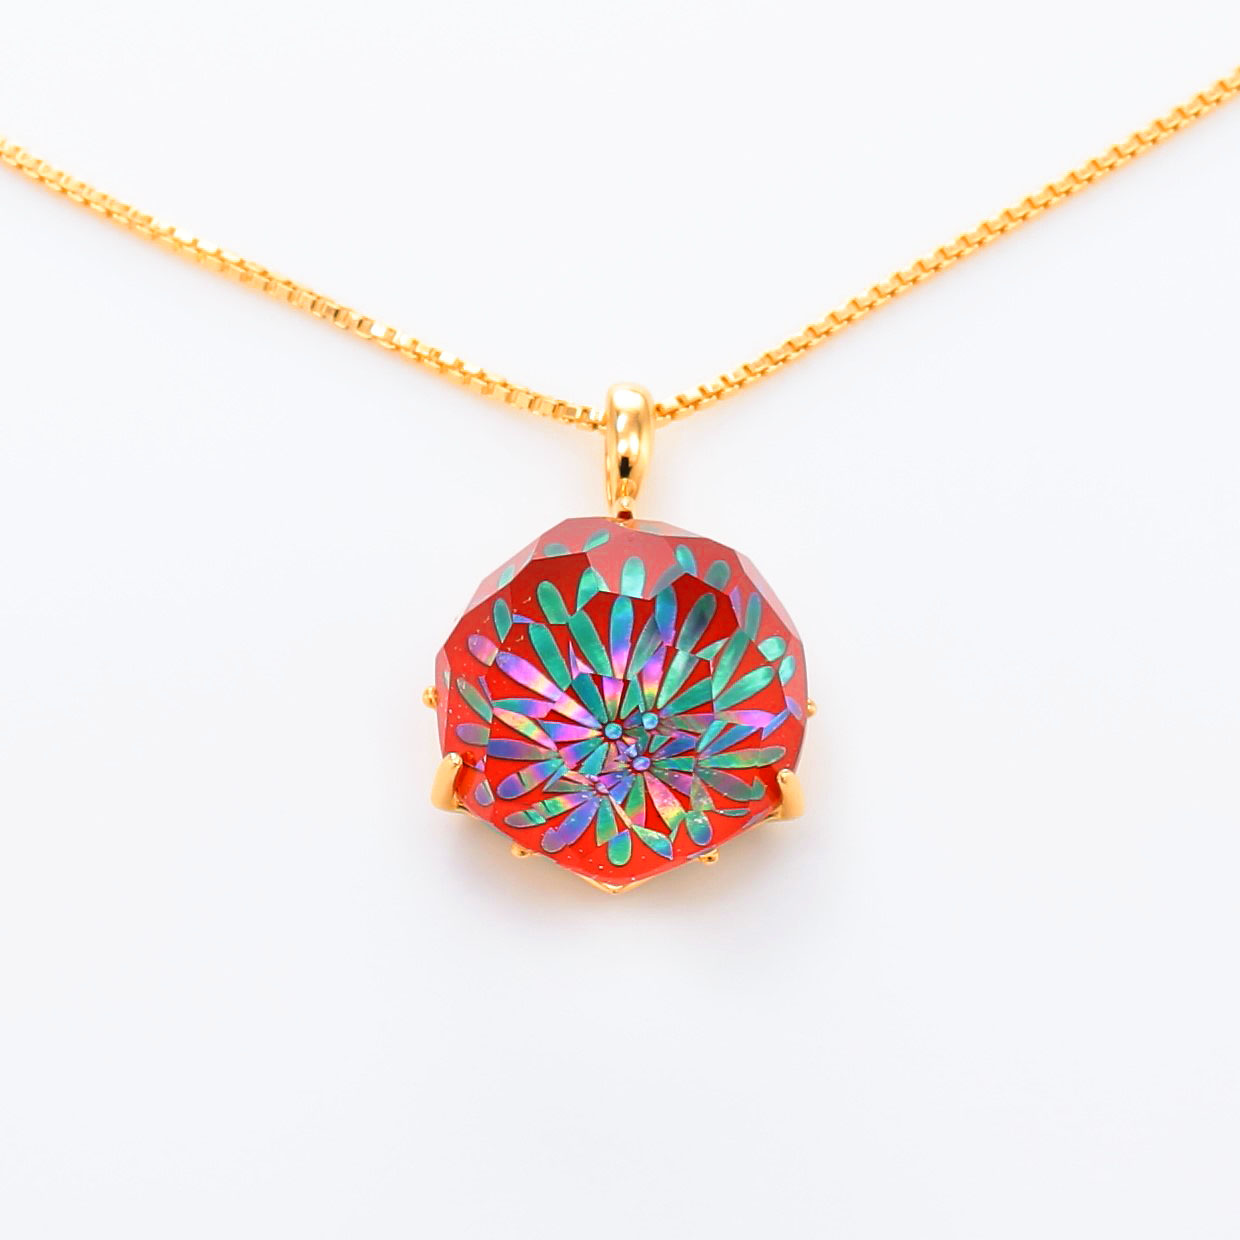 宝石クォーツ・水晶を使った花と和風のデザインが特徴的な和の彩ネックレス/ペンダントの商品写真です。型番：CR201010-01~02 画像その2